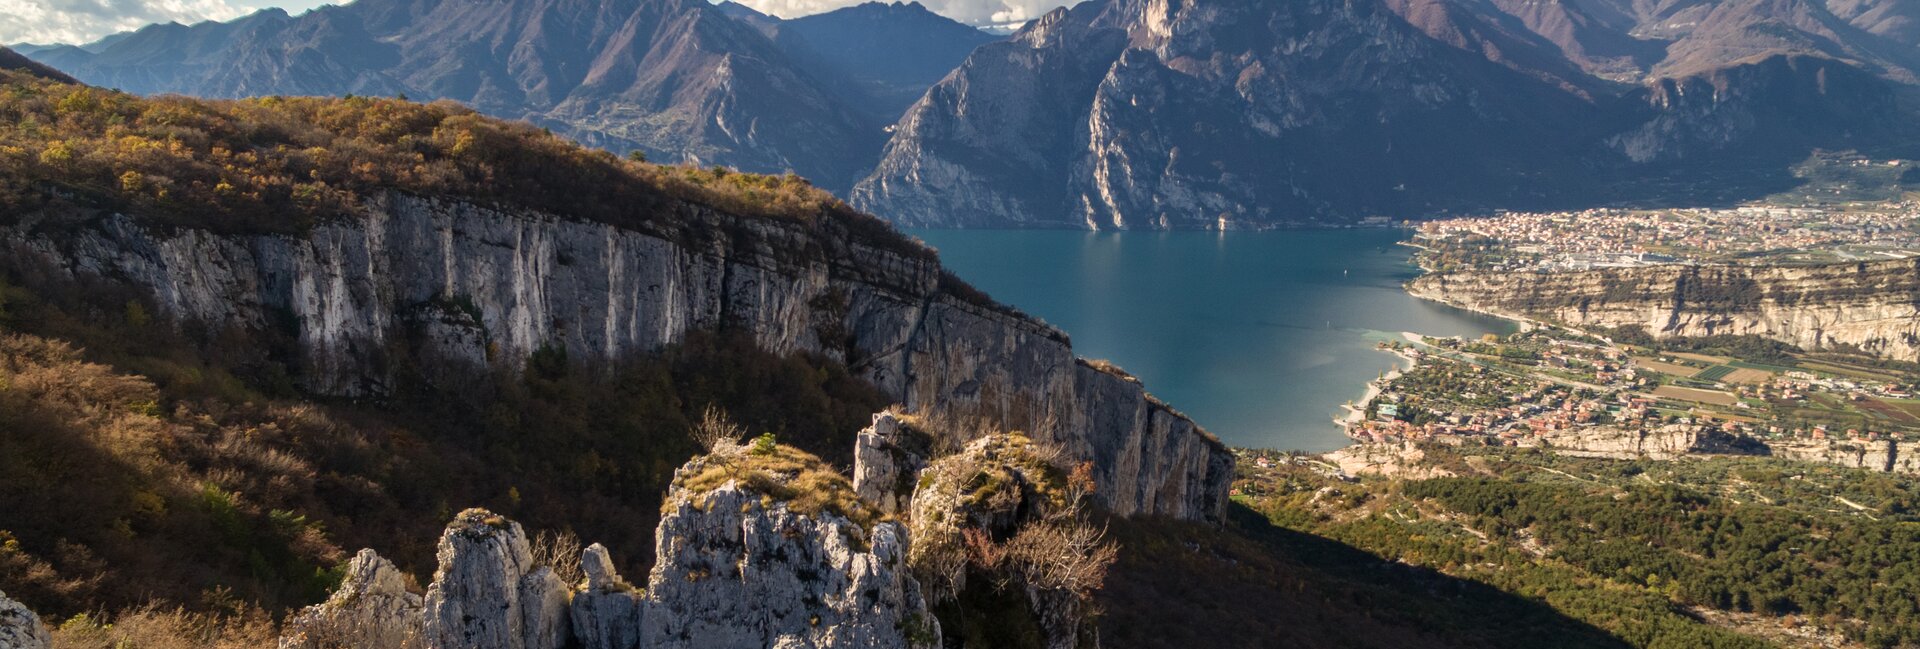 Garda Trentino, Comano Terme, Valle di Ledro i Valle dei Laghi